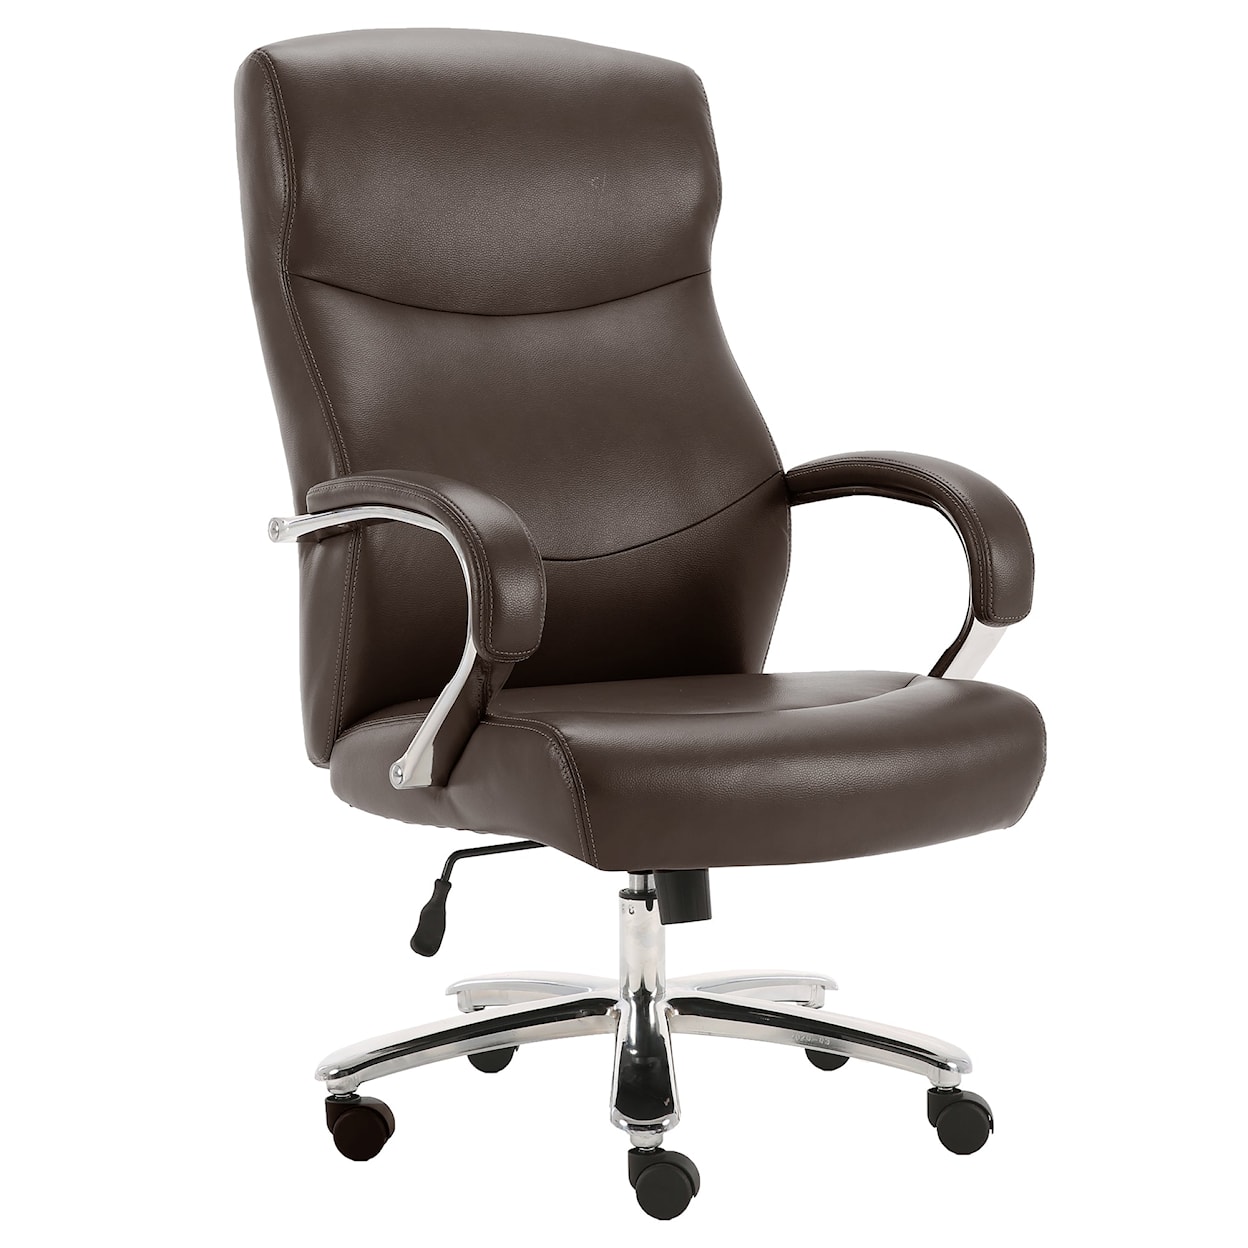 Parker Living Dc#315Hd-Cco - Desk Chair Desk Chair